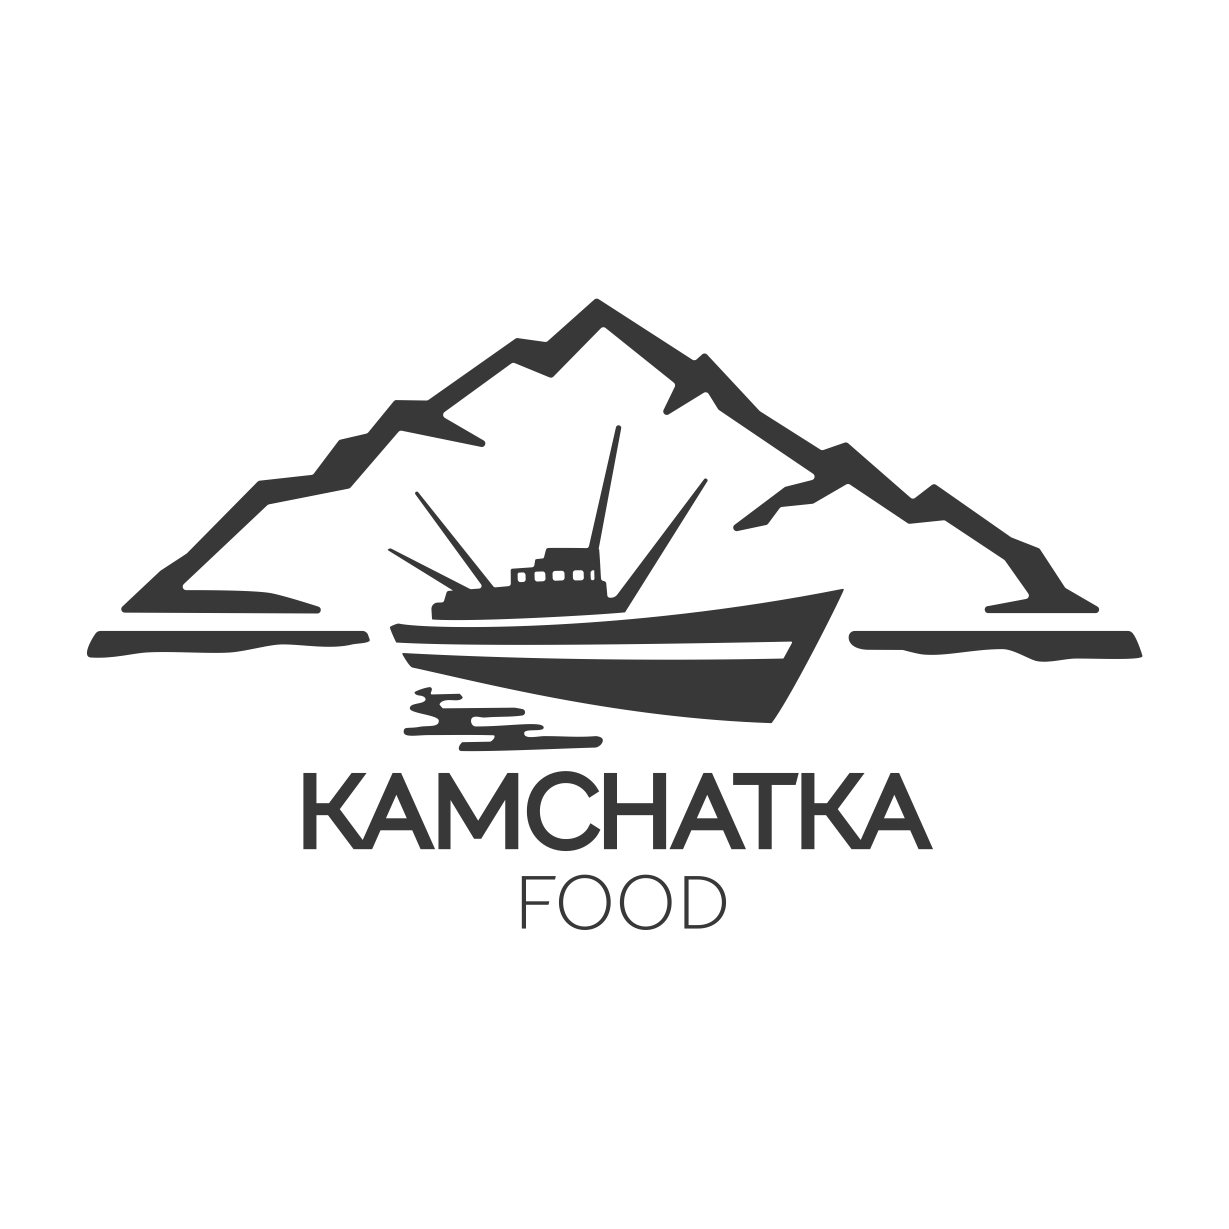 Kamchatkafood